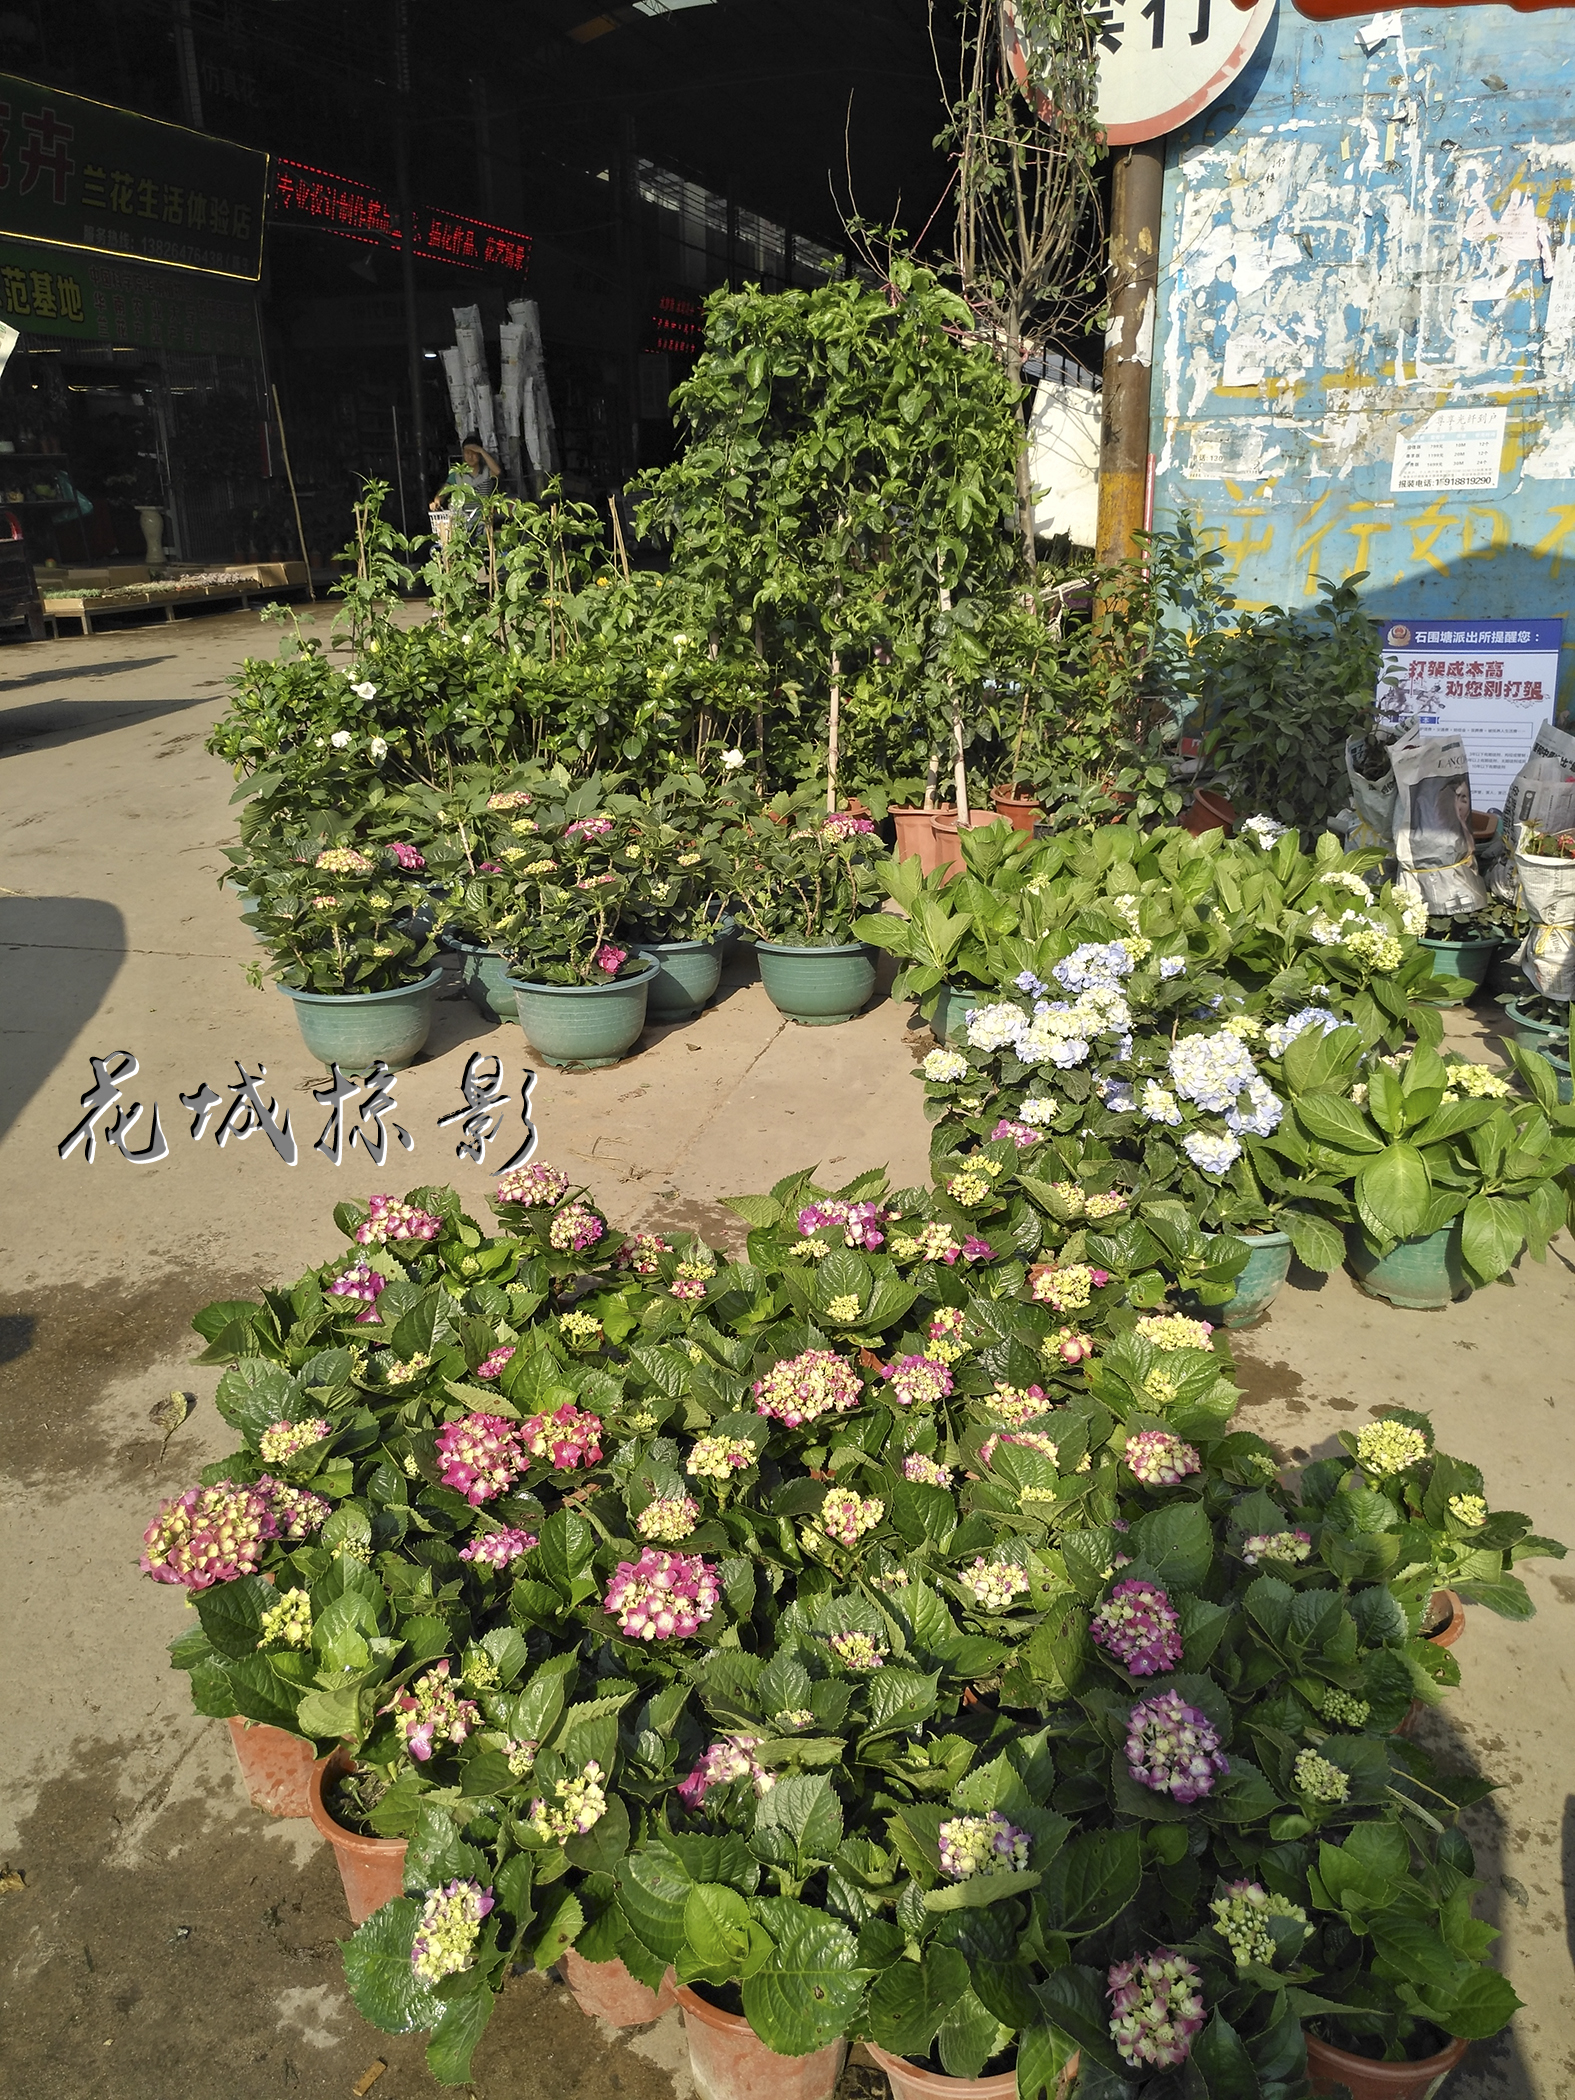 让人收获美丽的地方——广州岭南花卉市场